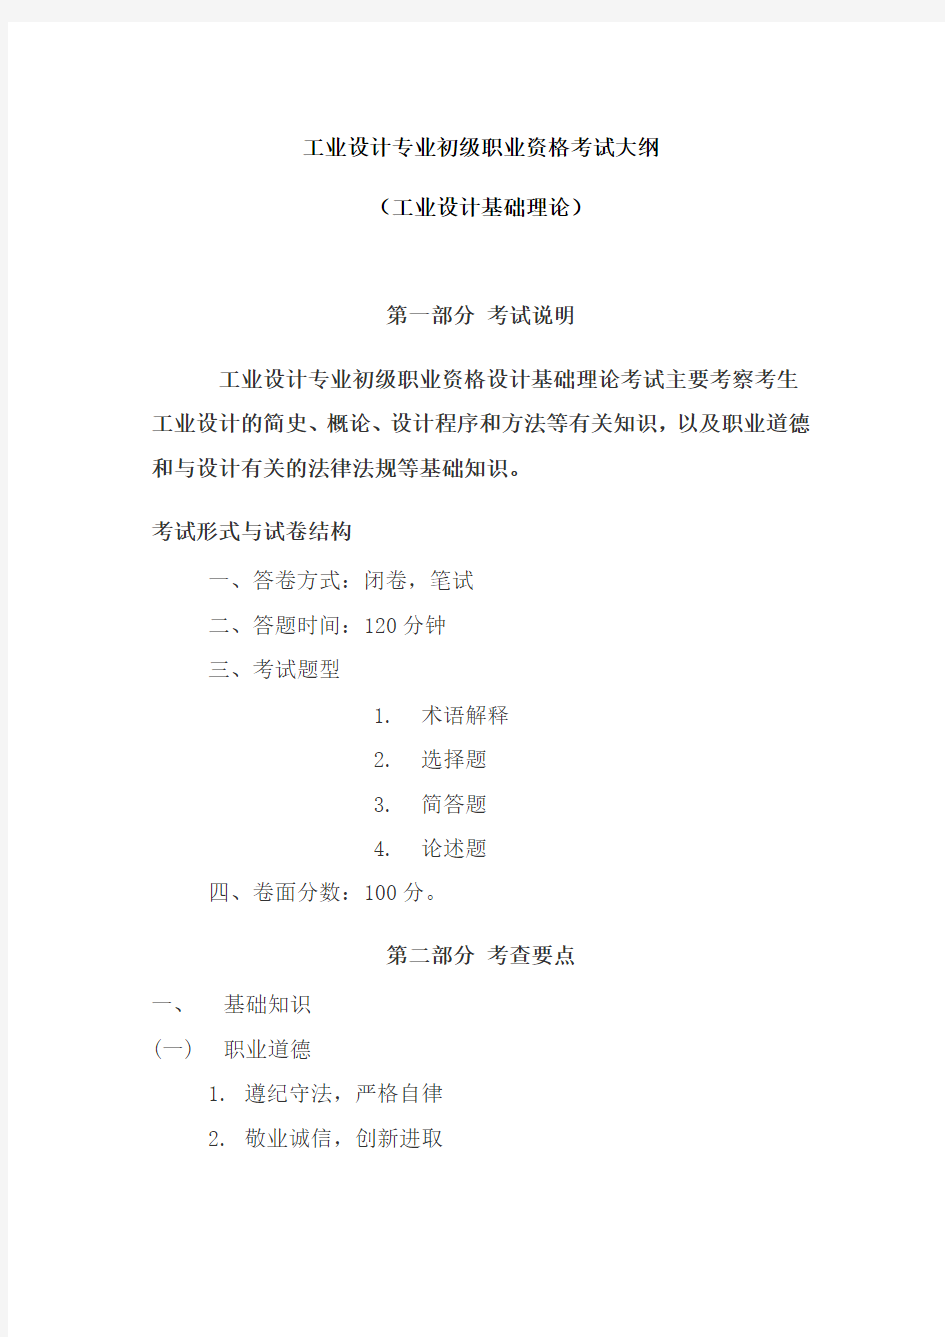 广东省工业设计专业职业资格考试大纲(初级,中级,高级)